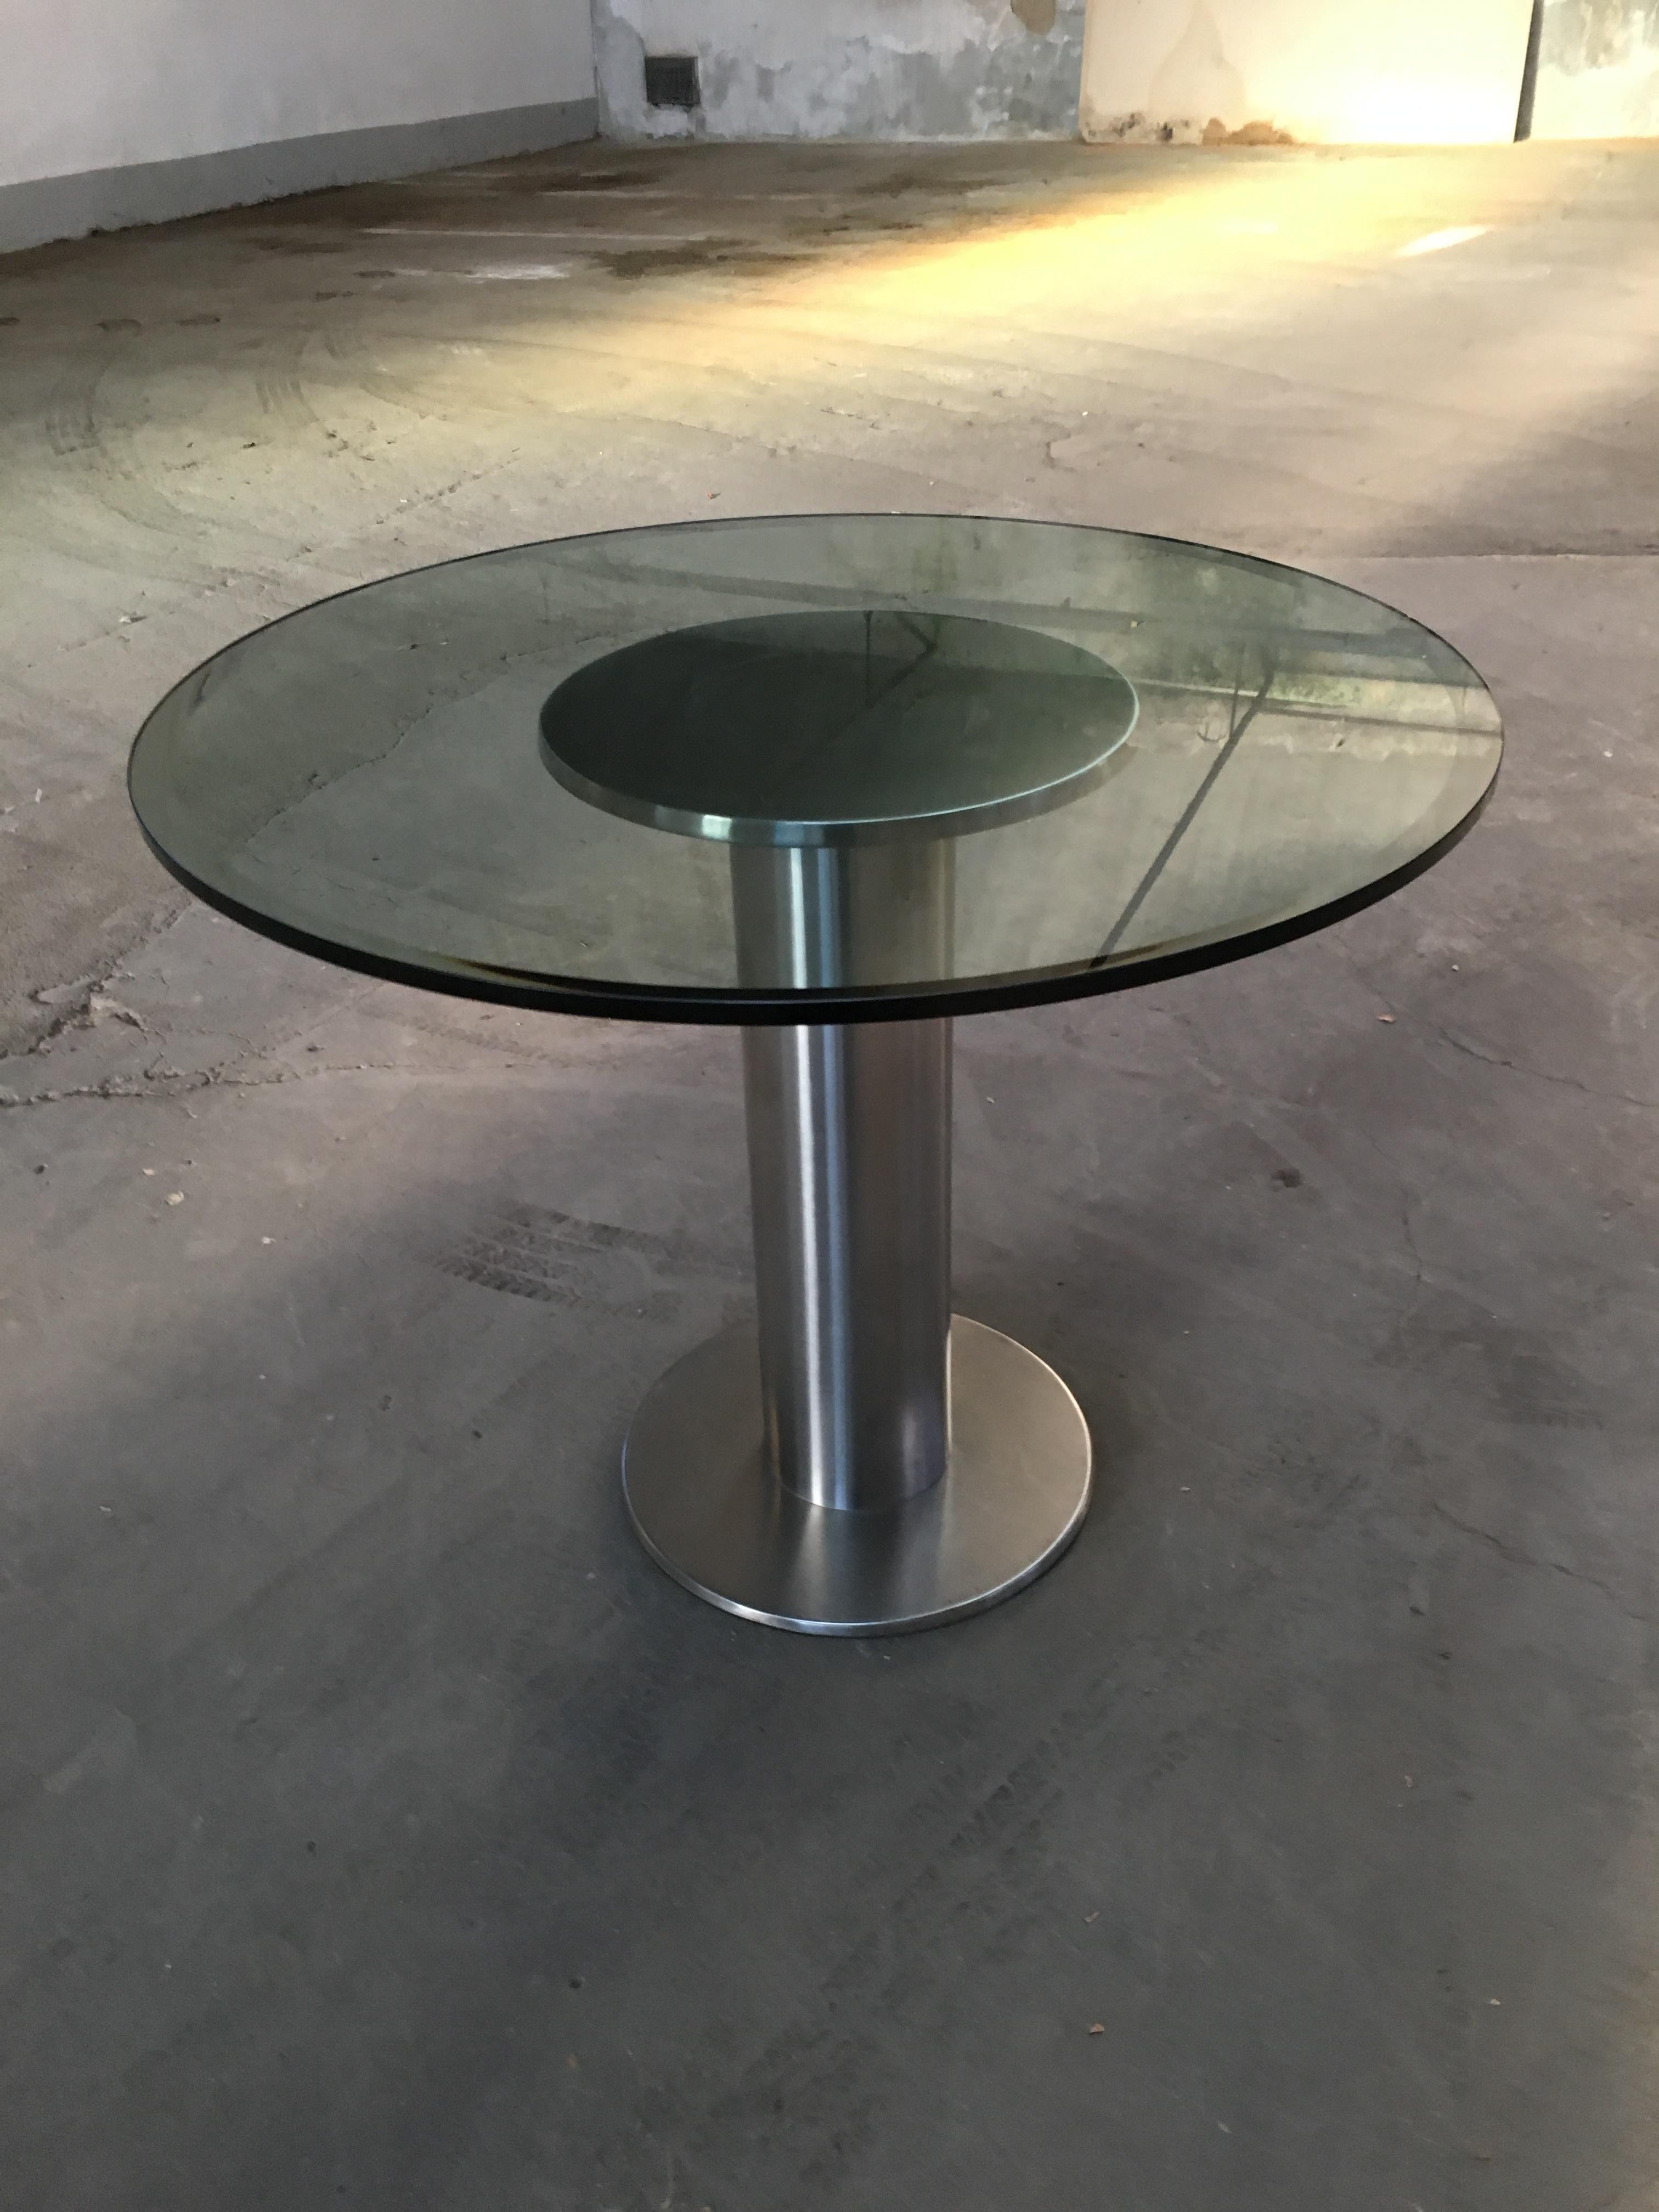 Table de salle à manger ou de centre de table italienne moderne du milieu du siècle, avec socle rond en acier inoxydable chromé et plateau en verre. 1970s.